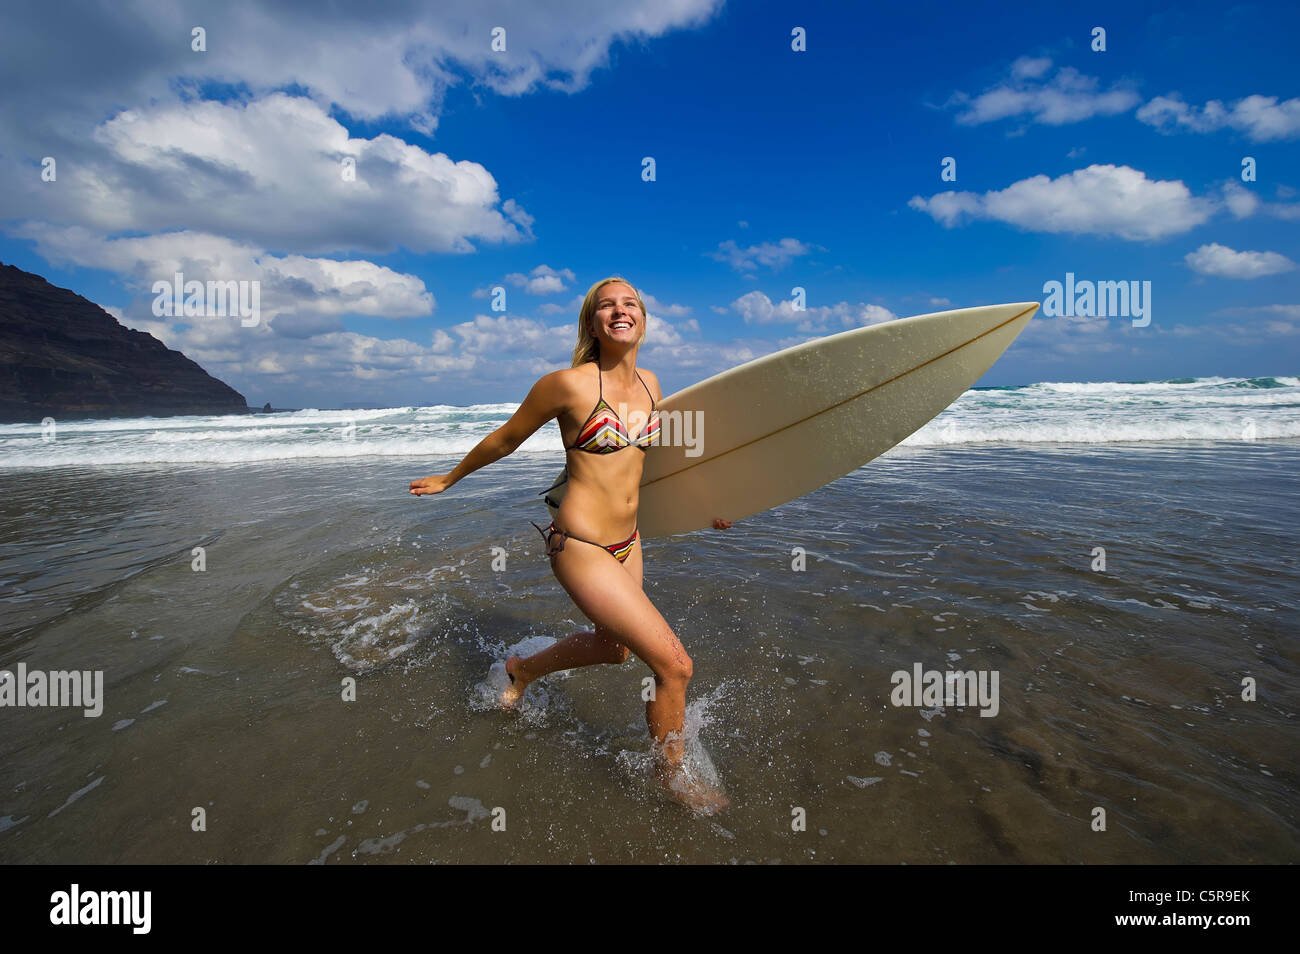 Eine junge blonde Surfer Mädchen Spaß in den Wellen des Ozeans. Stockfoto